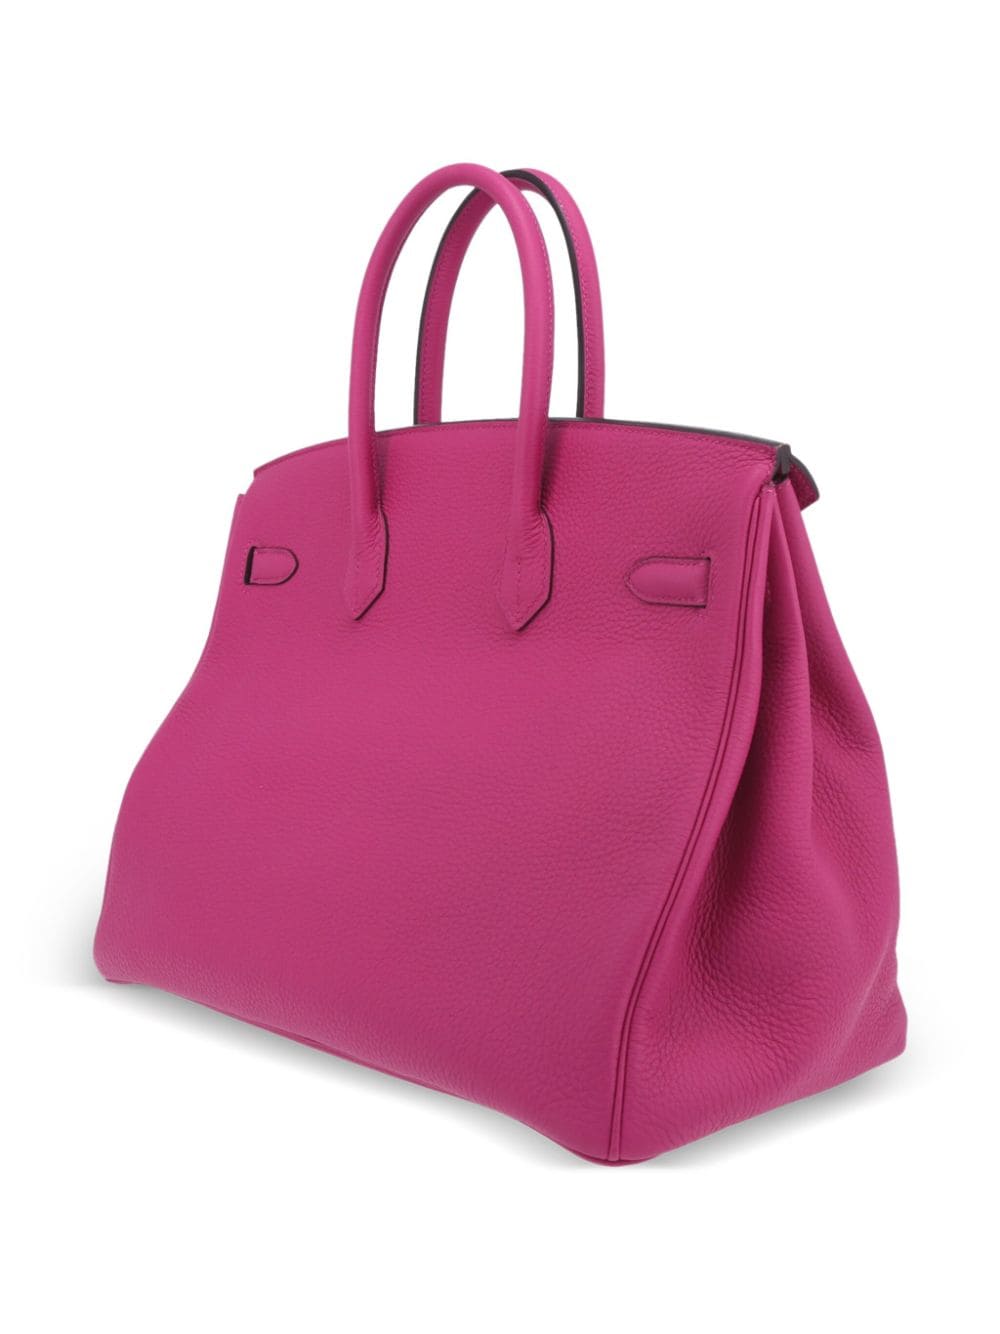 Pre-owned Hermes 2019 Birkin 35 Handbag In Pink